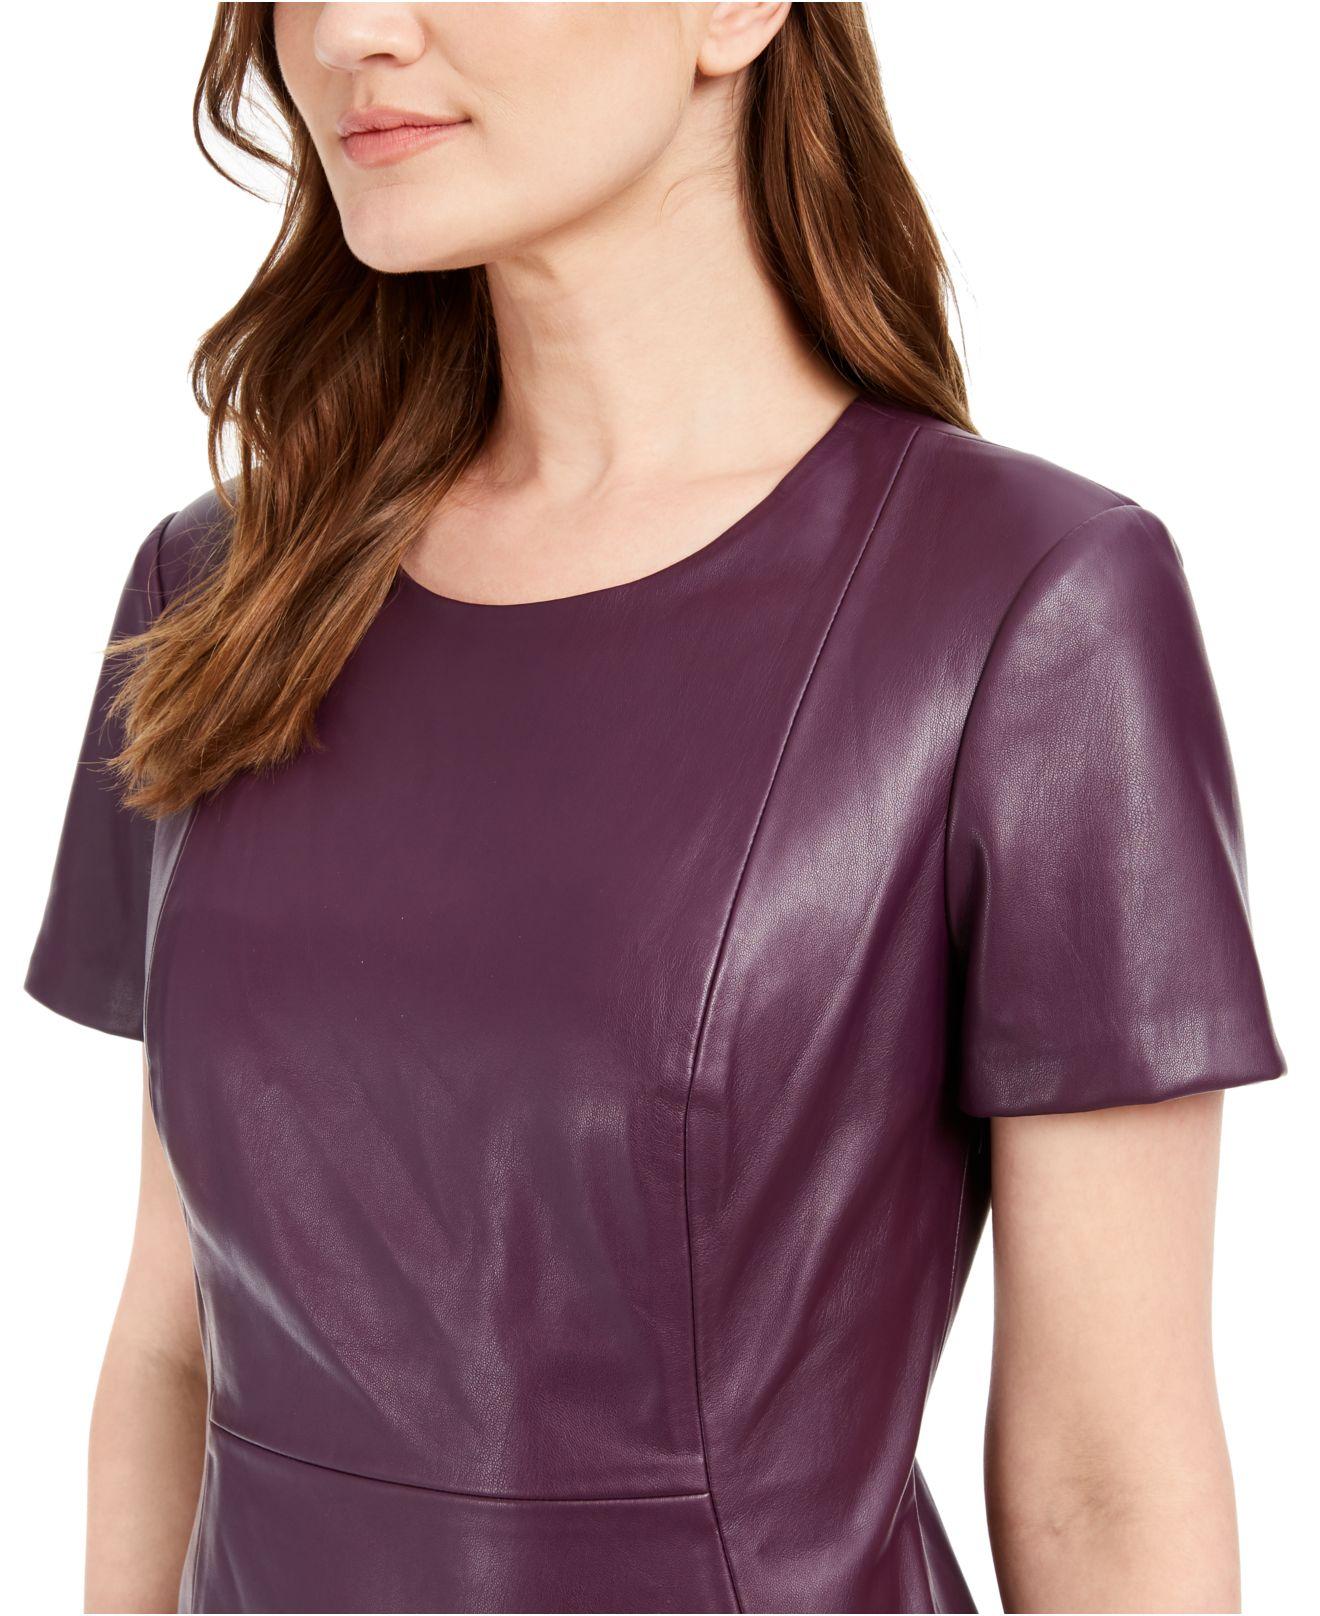 Calvin Klein Faux-leather Sheath Dress in Purple | Lyst